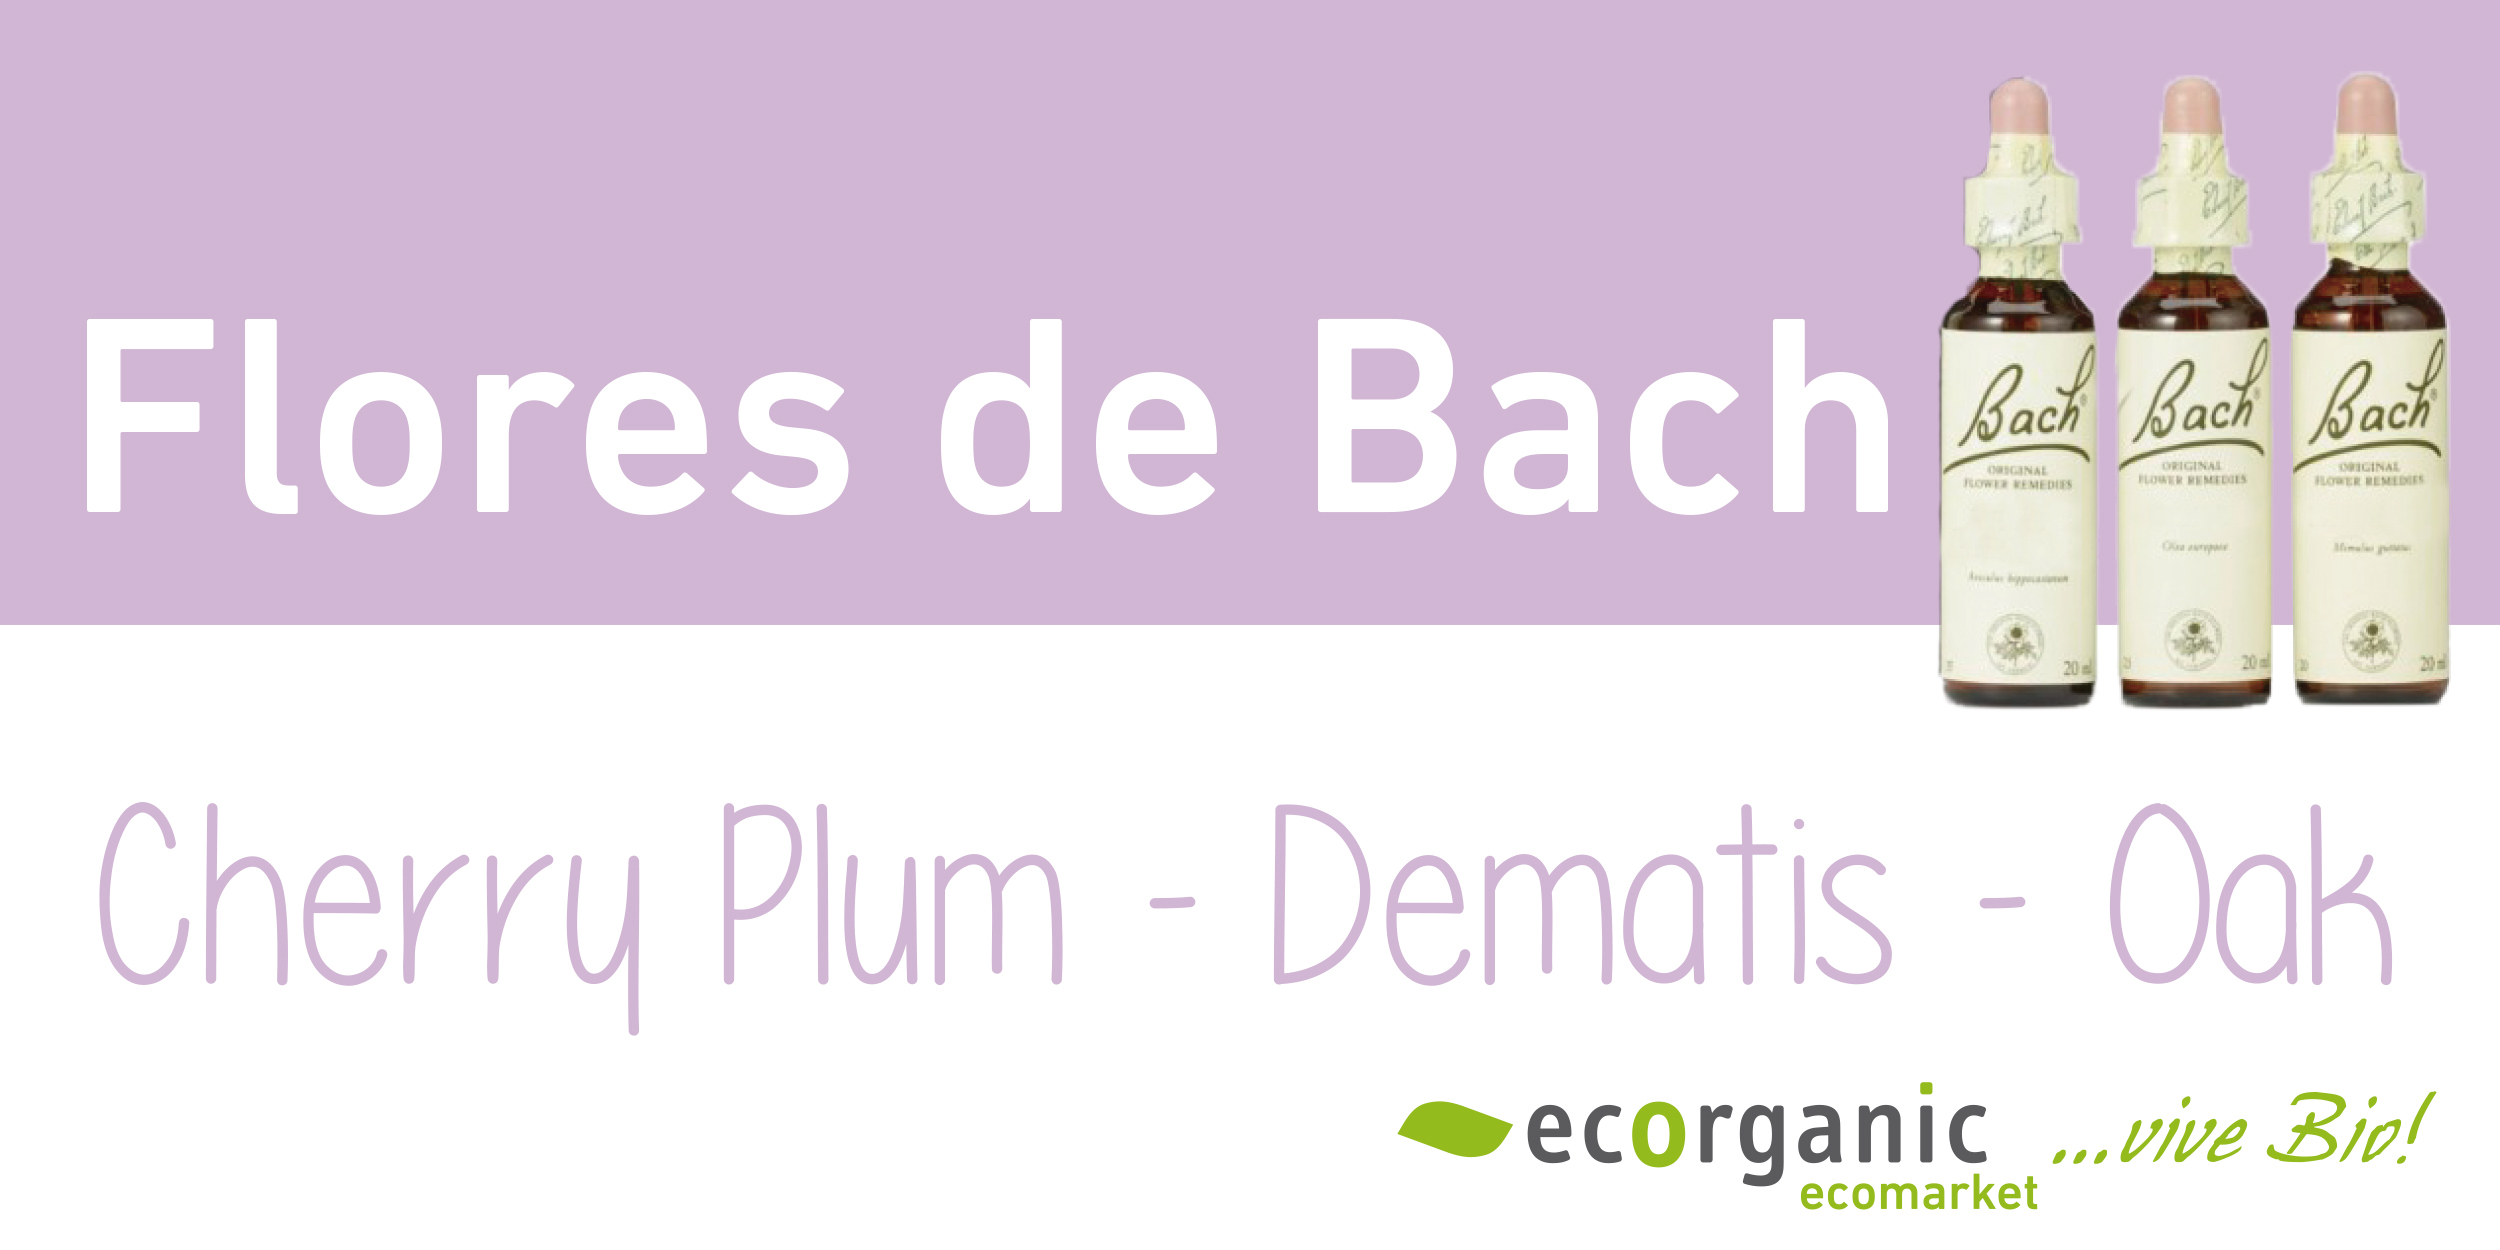 Flores de Bach (Cherry plum, clematis, oak)